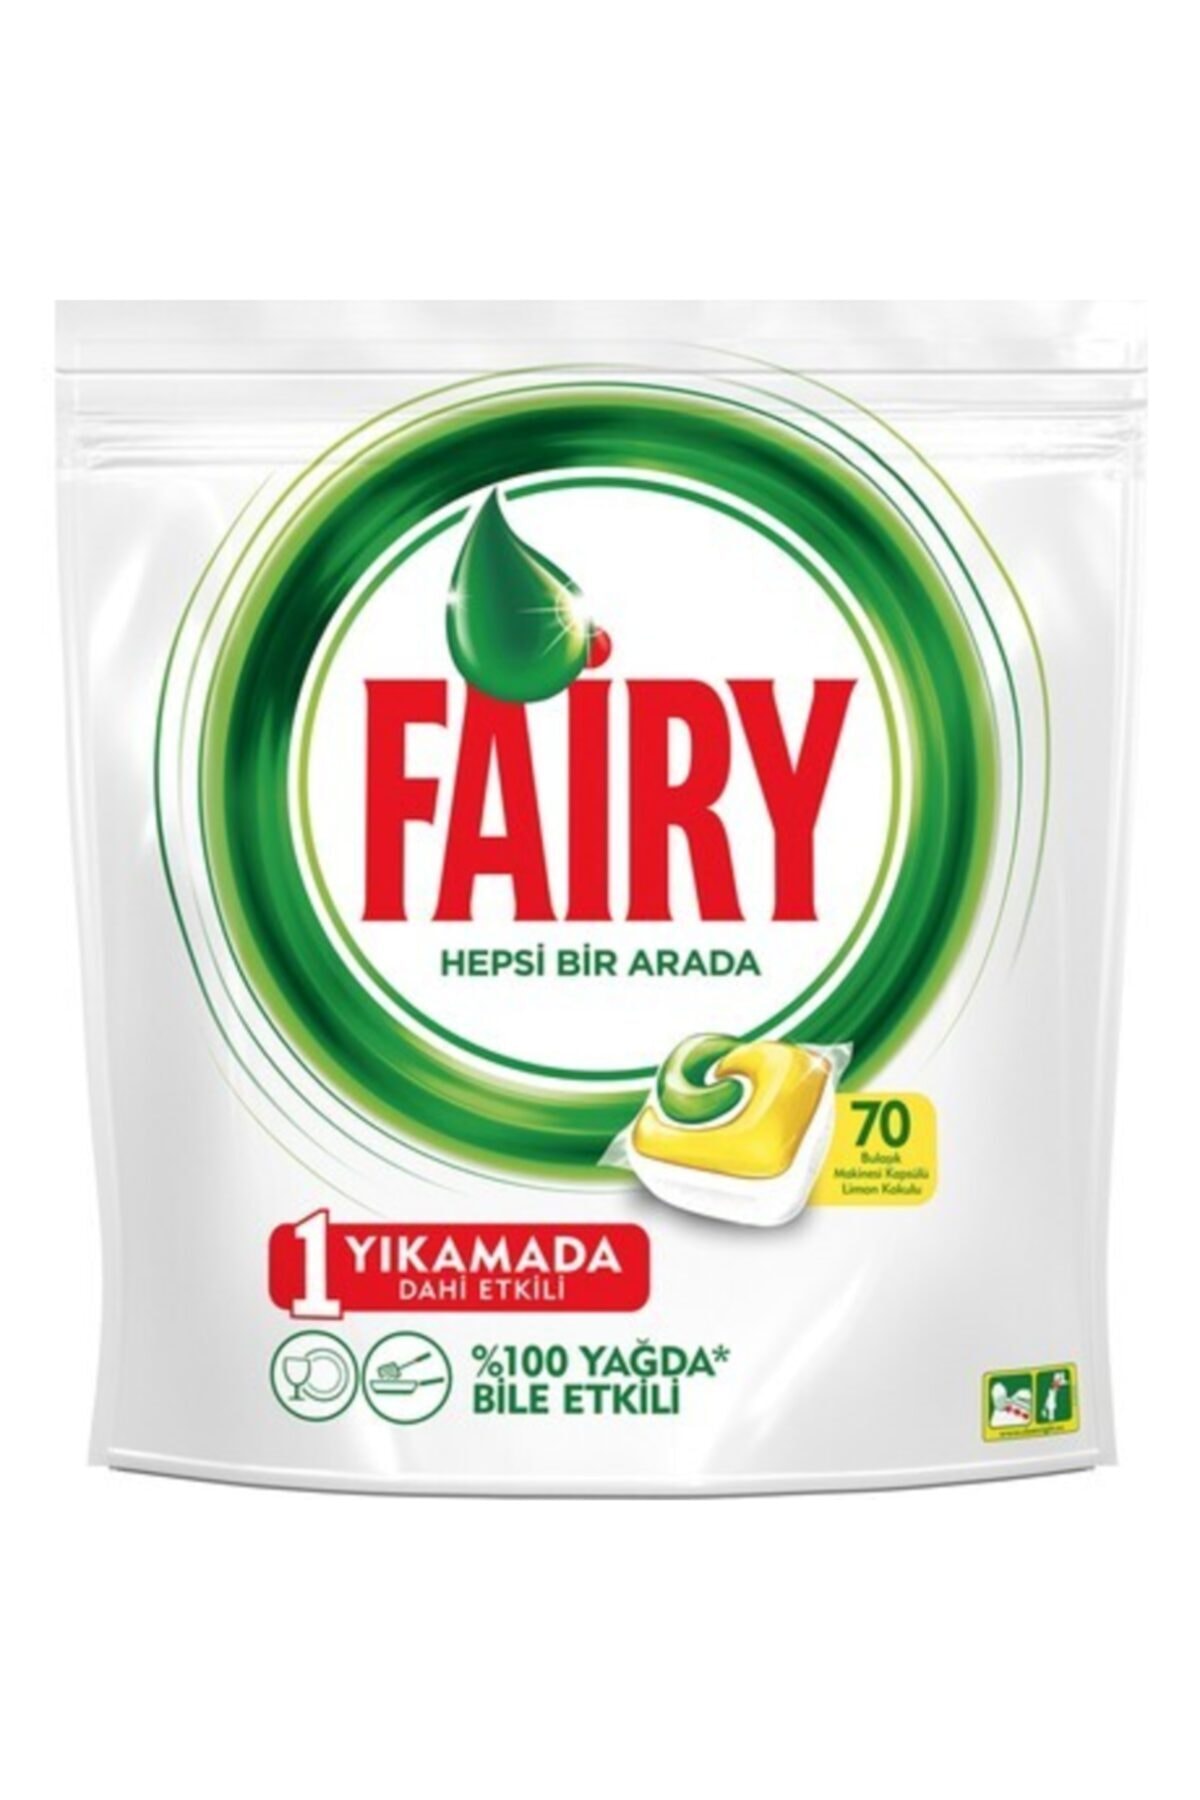 Fairy Faıry Hepsi Bir Arada Tablet 70 Li